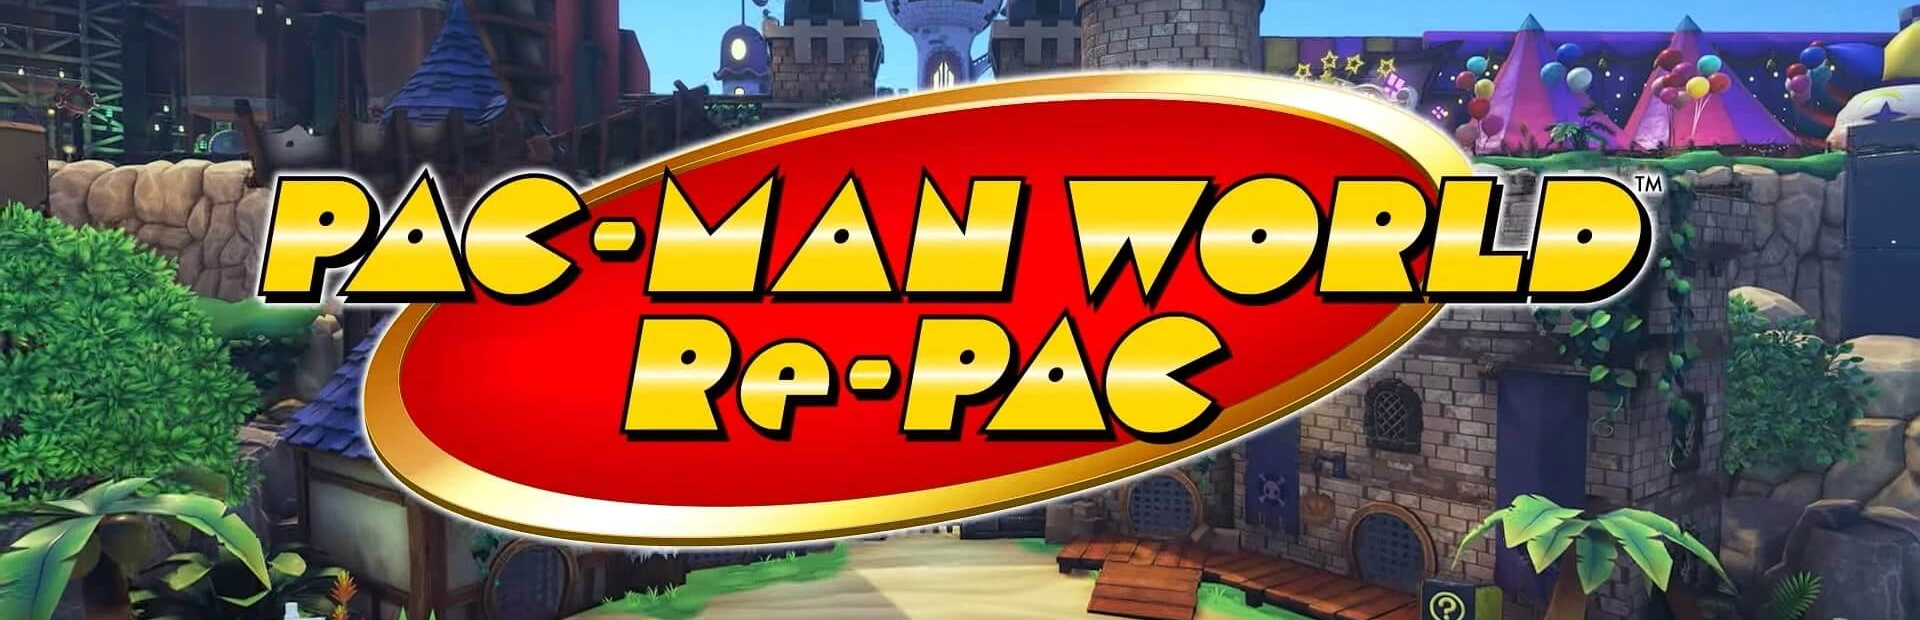 دانلود بازی PAC-MAN WORLD Re-PAC برای کامپیوتر | گیمباتو